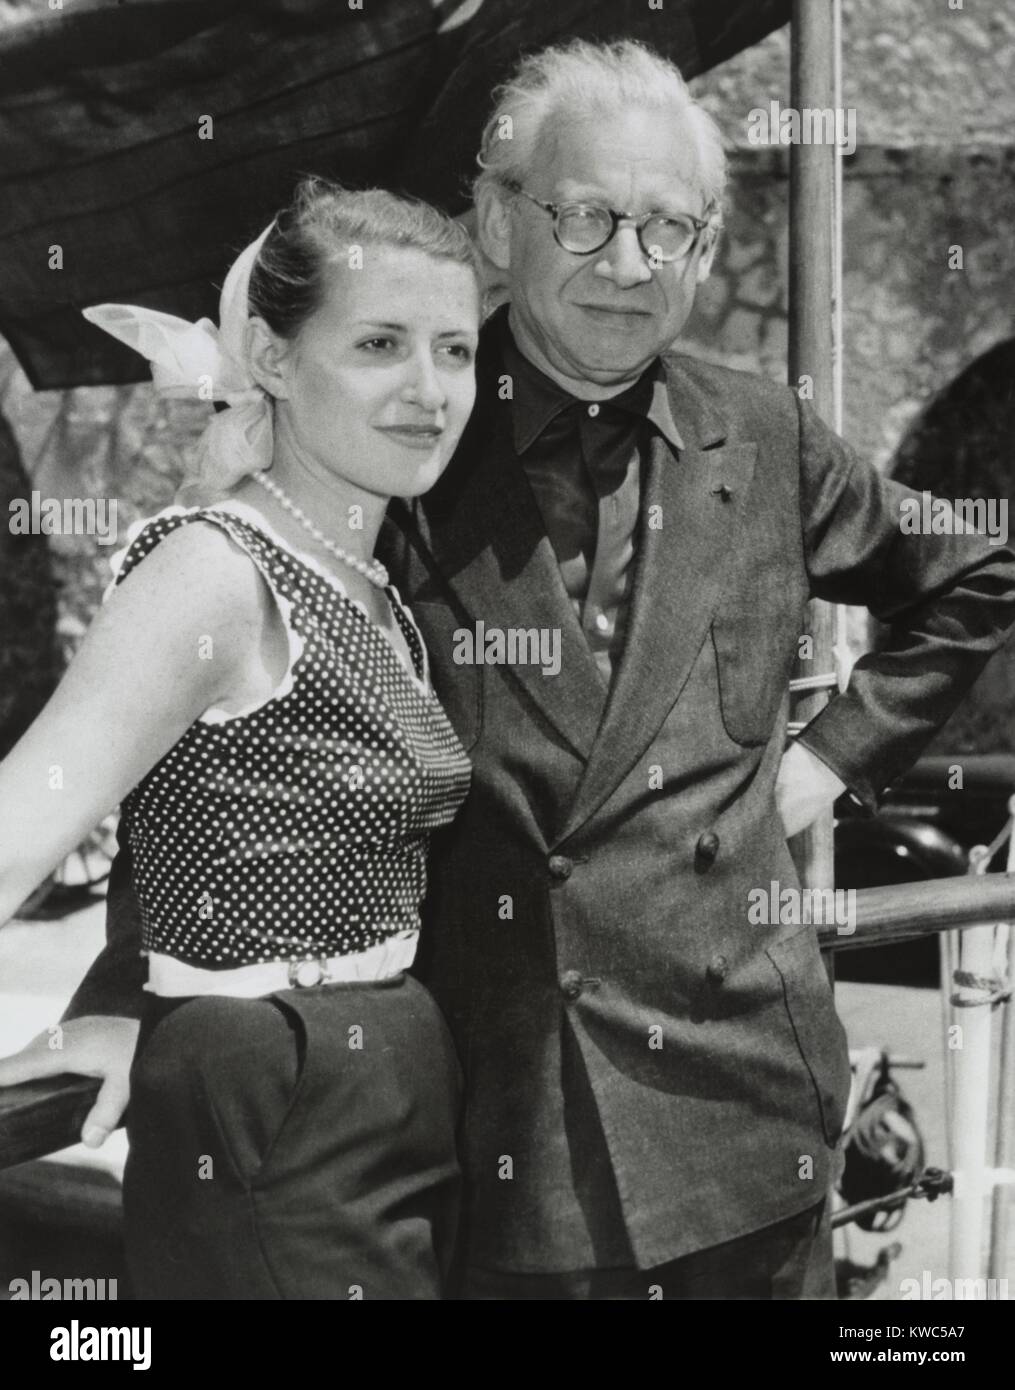 Producteur du film, Sir Alexander Korda avec sa fiancée Alexandra Boycun, le 3 juin 1953. 59 ans Korda et ses 25 ans fiancée s'appuyer contre le rail de son yacht à Antibes, France. Sir Alexander était divorcé de Merle Oberon, star du cinéma en 1945. (BSLOC   2015 14 173) Banque D'Images